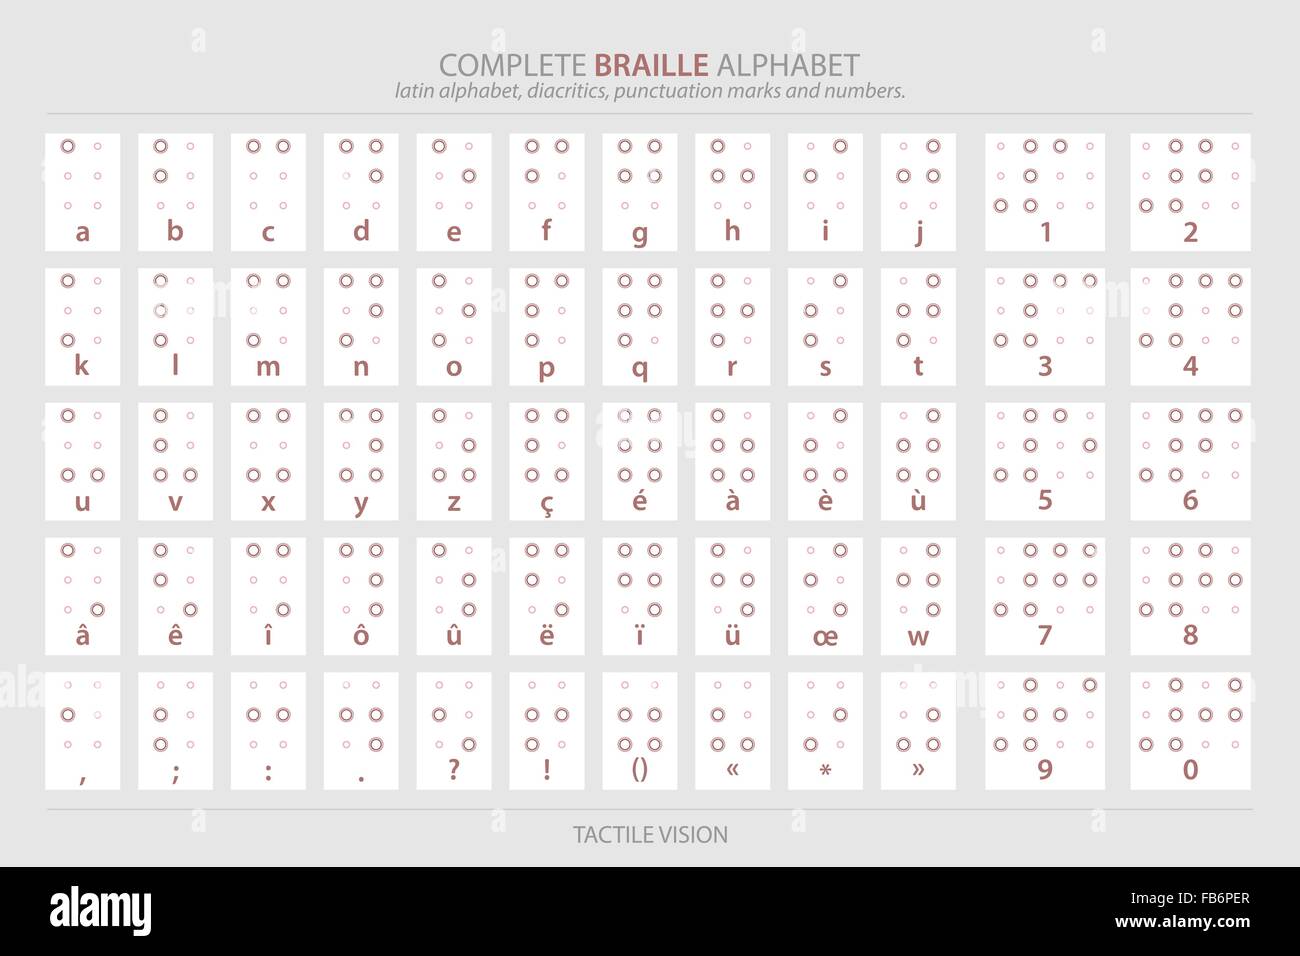 Braille Alphabet Wallpaper Stock Photos Braille Alphabet